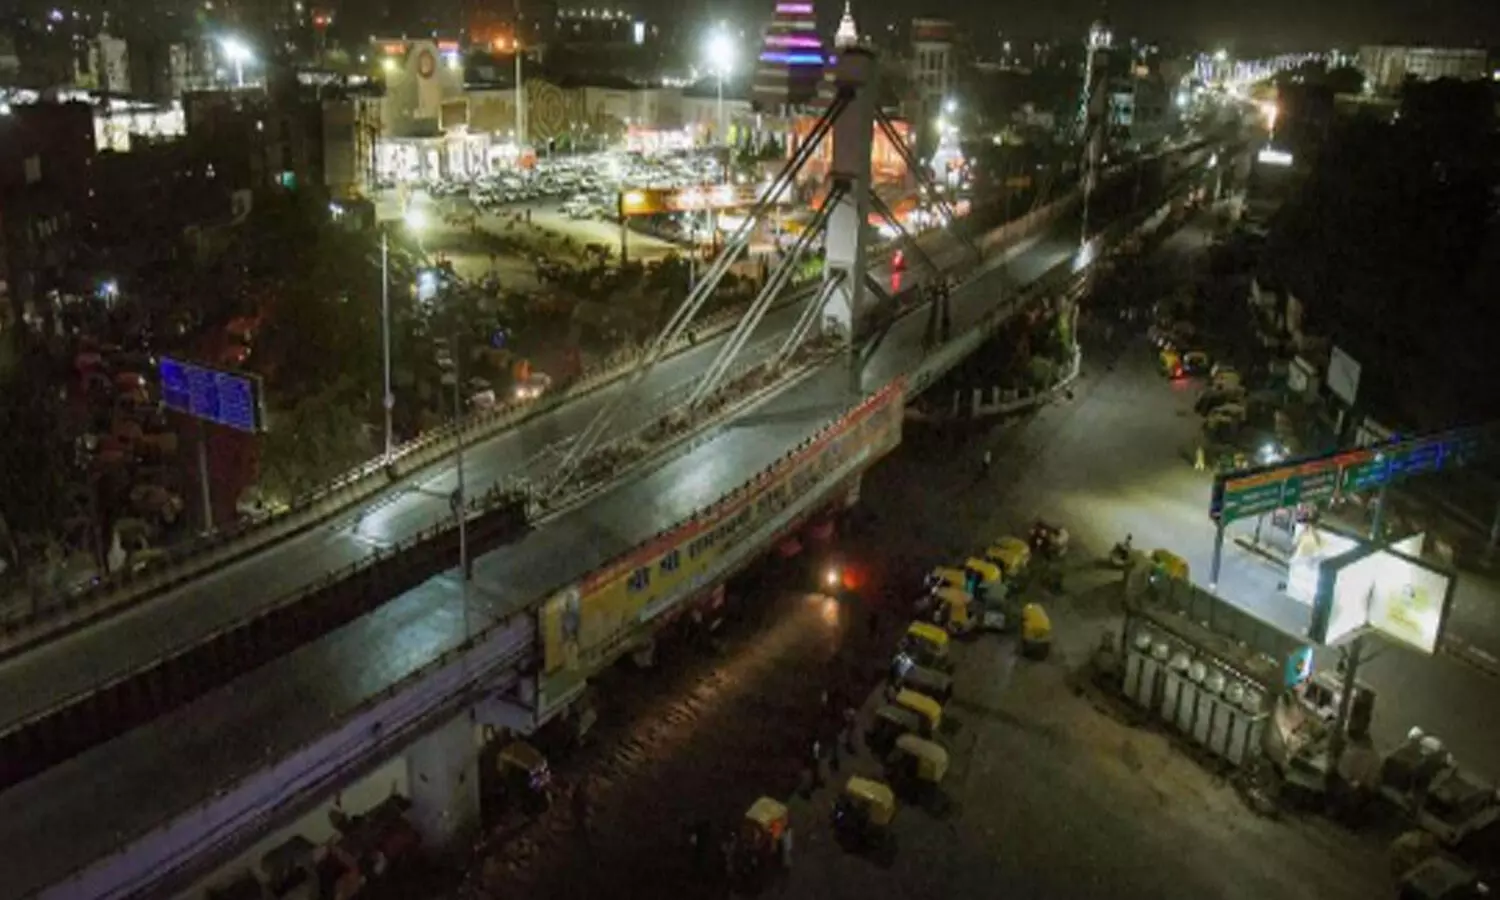 Delhi Lockdown Extended by One Week, Says Kejriwal